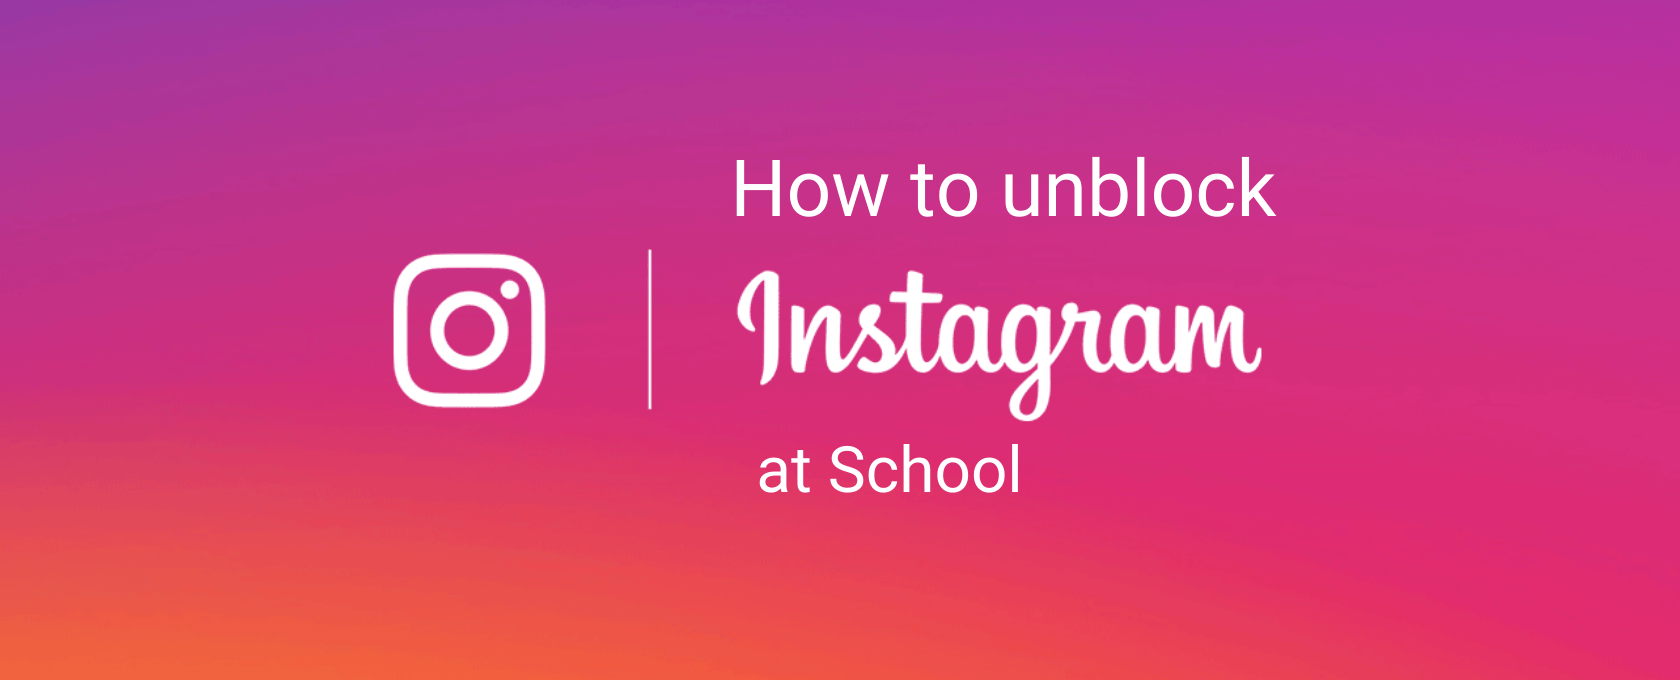 Unblock Instagram